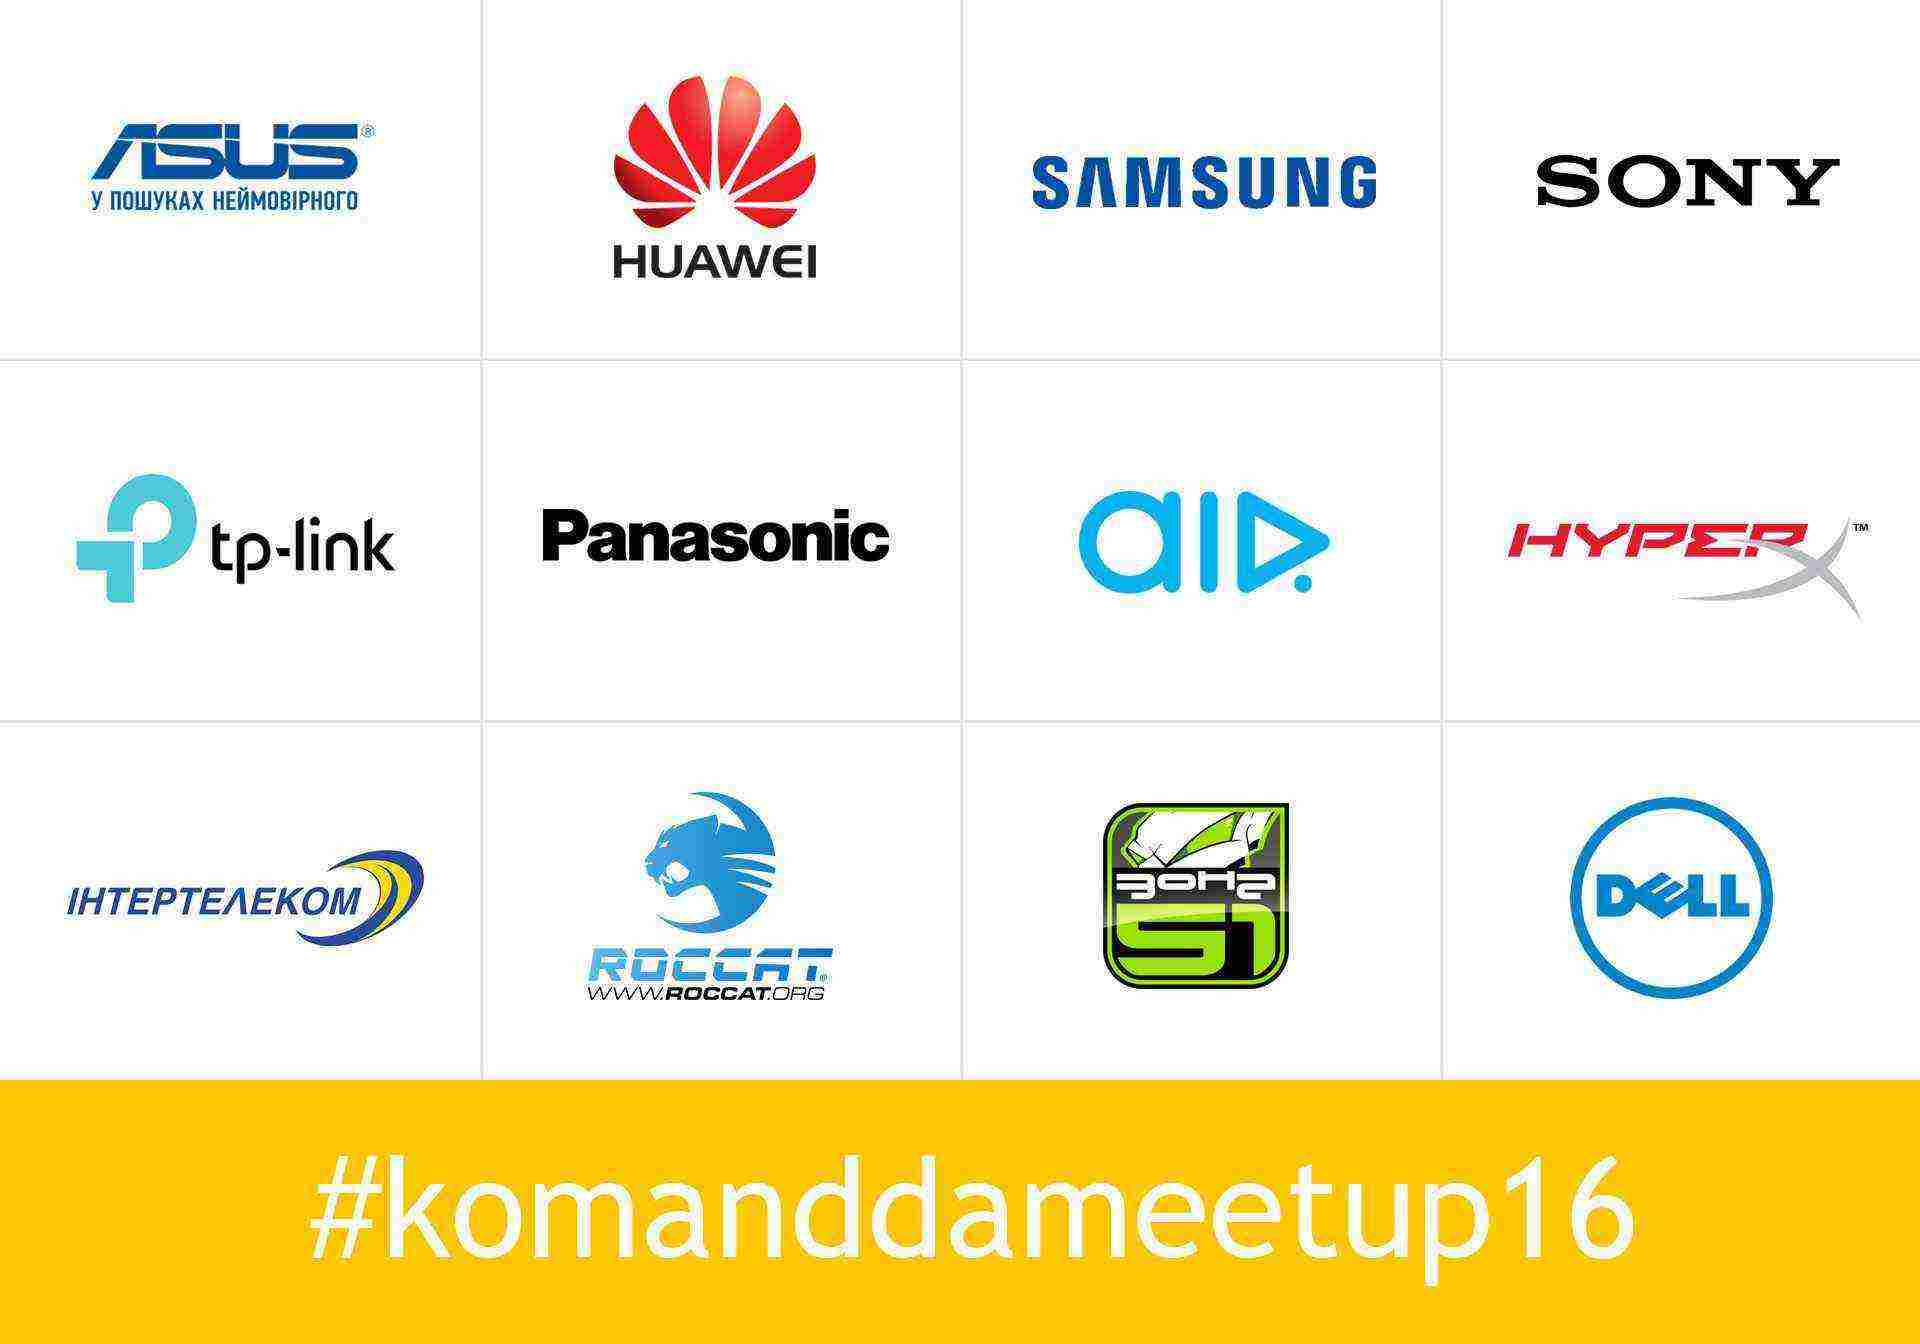 Komandda MeetUp 2016 уже в это воскресенье!